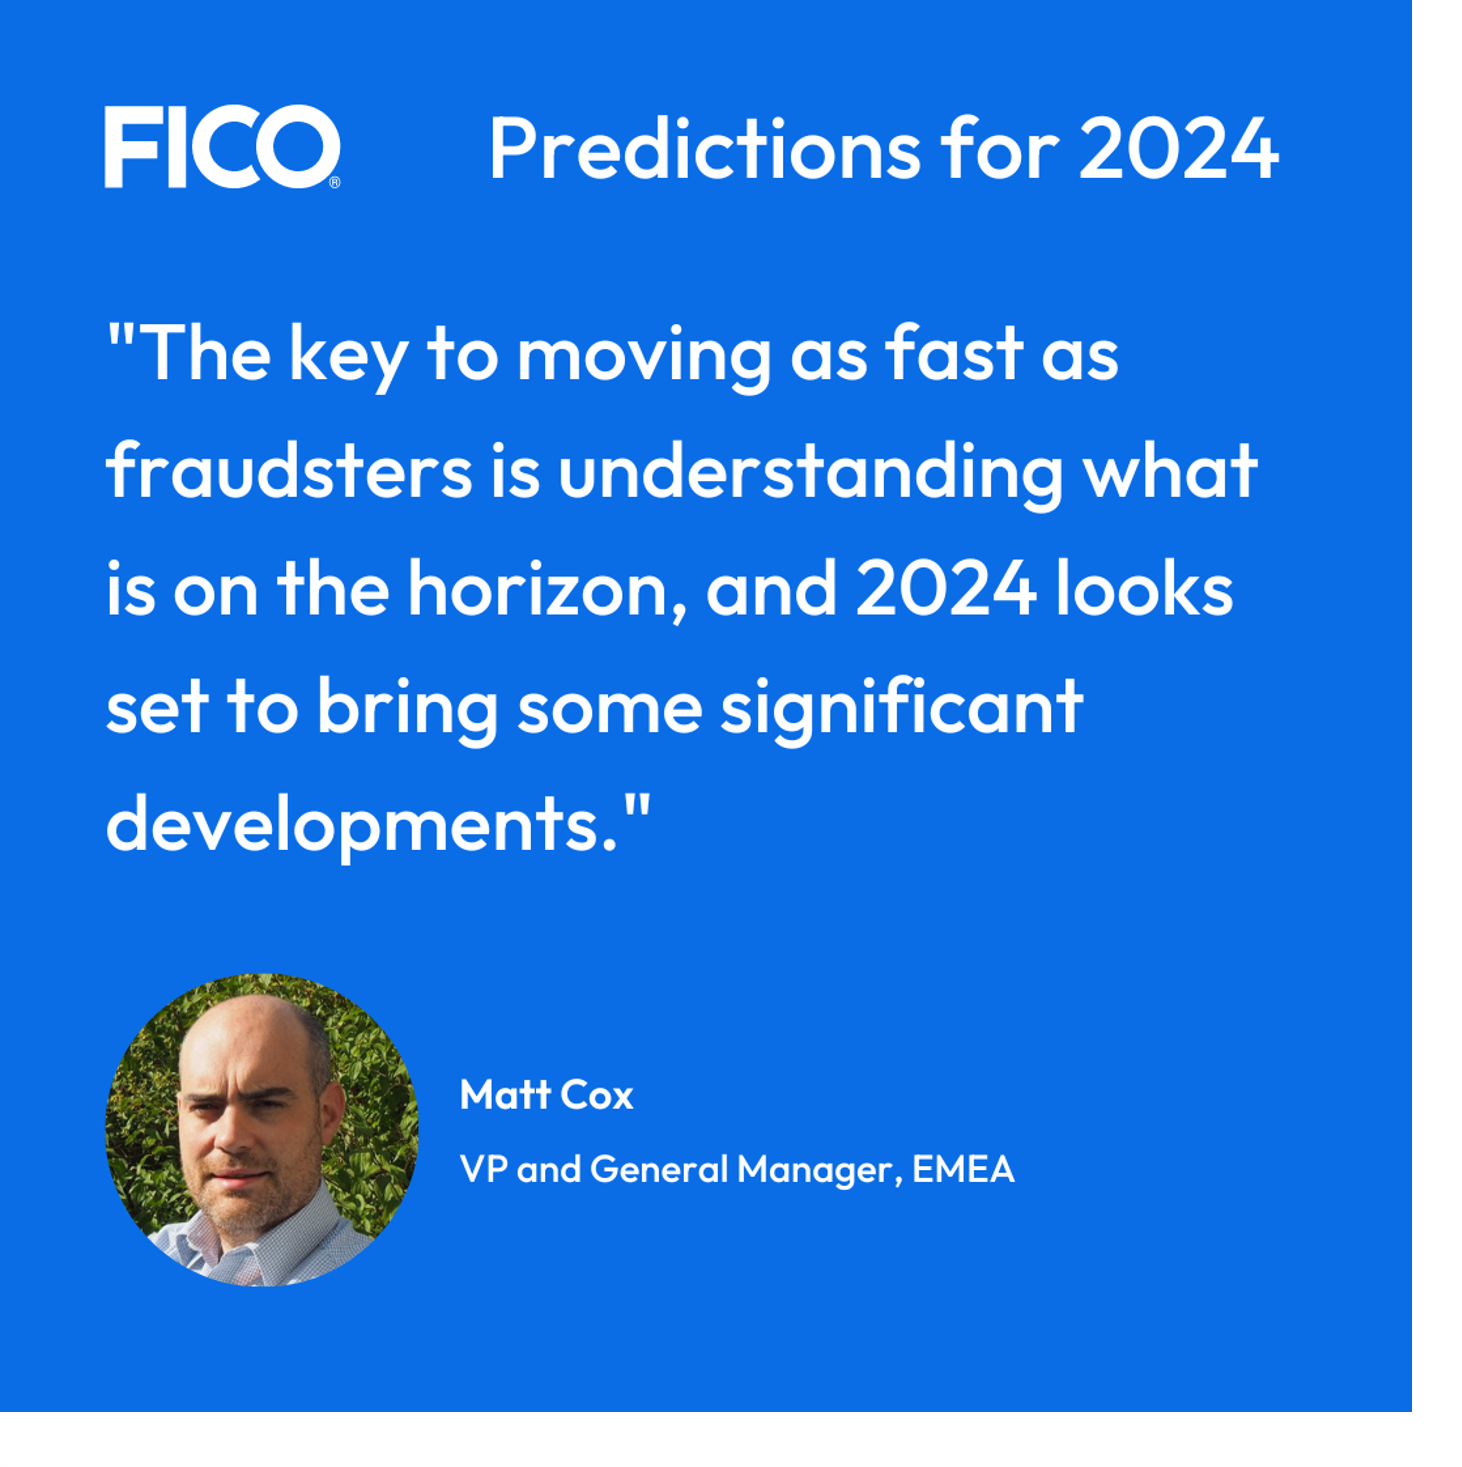 Matt Cox fraud predictions quote